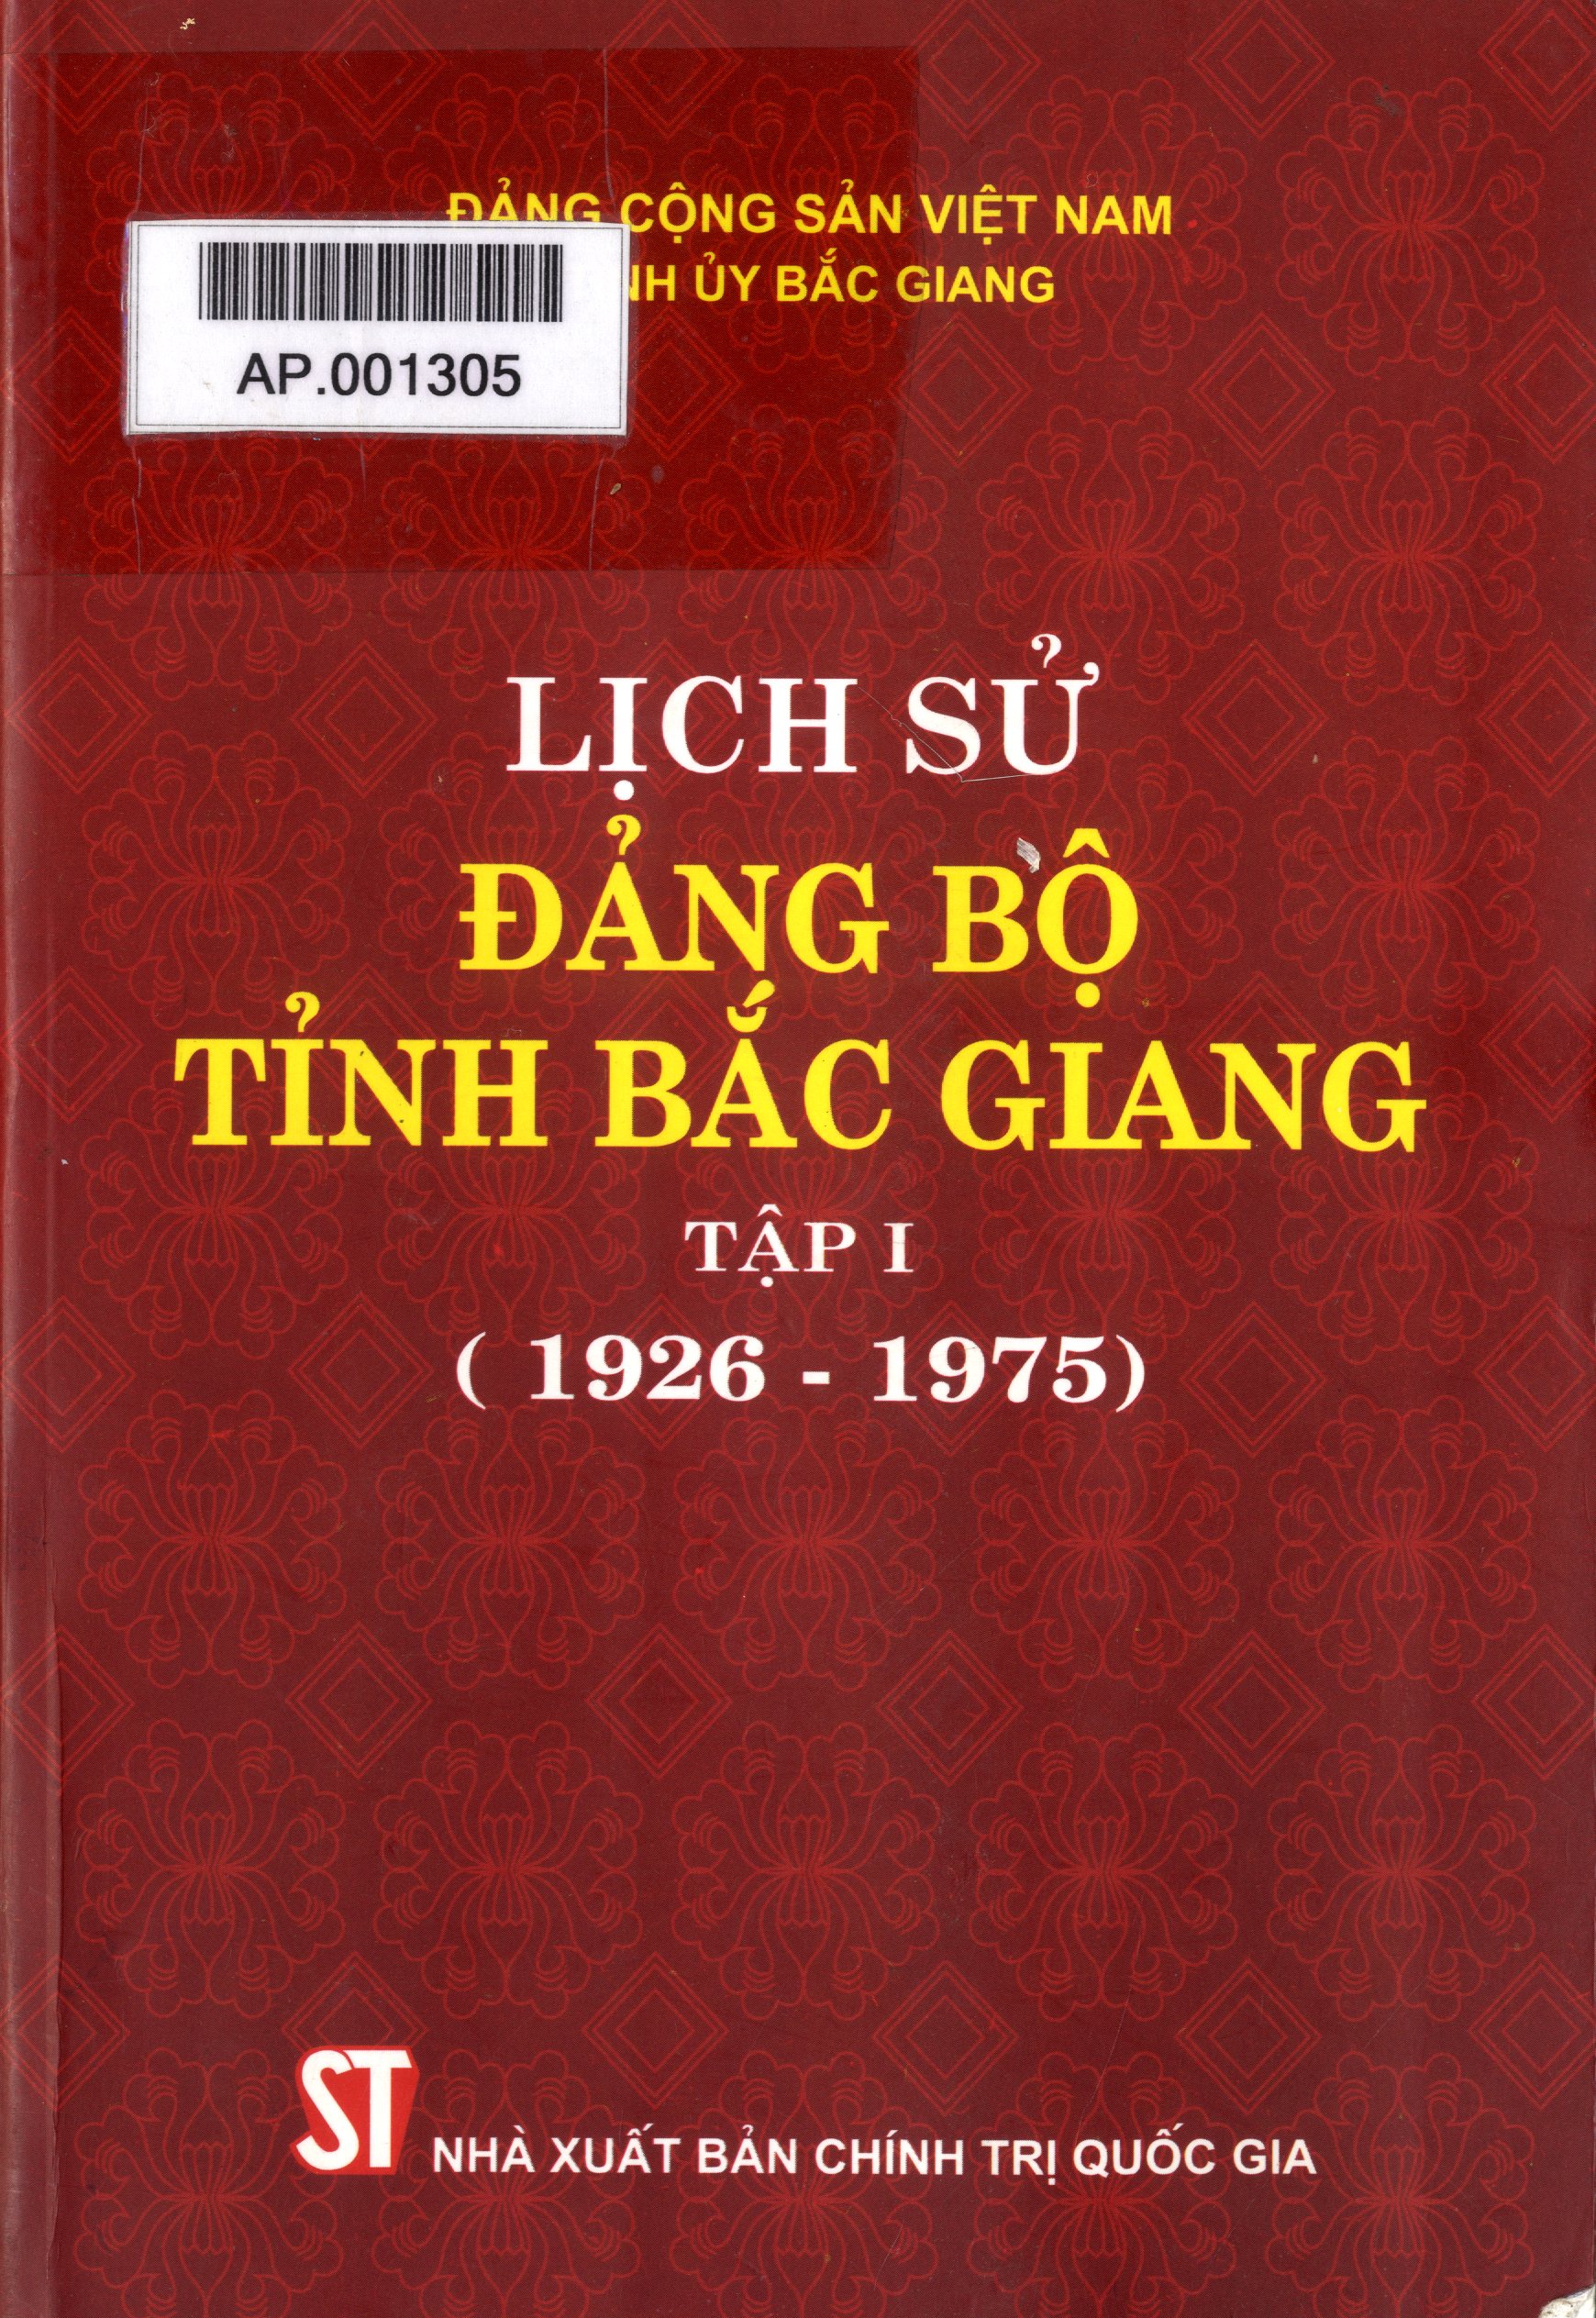 Giới thiệu sách: Lịch sử Đảng bộ tỉnh Bắc Giang. Tập 1